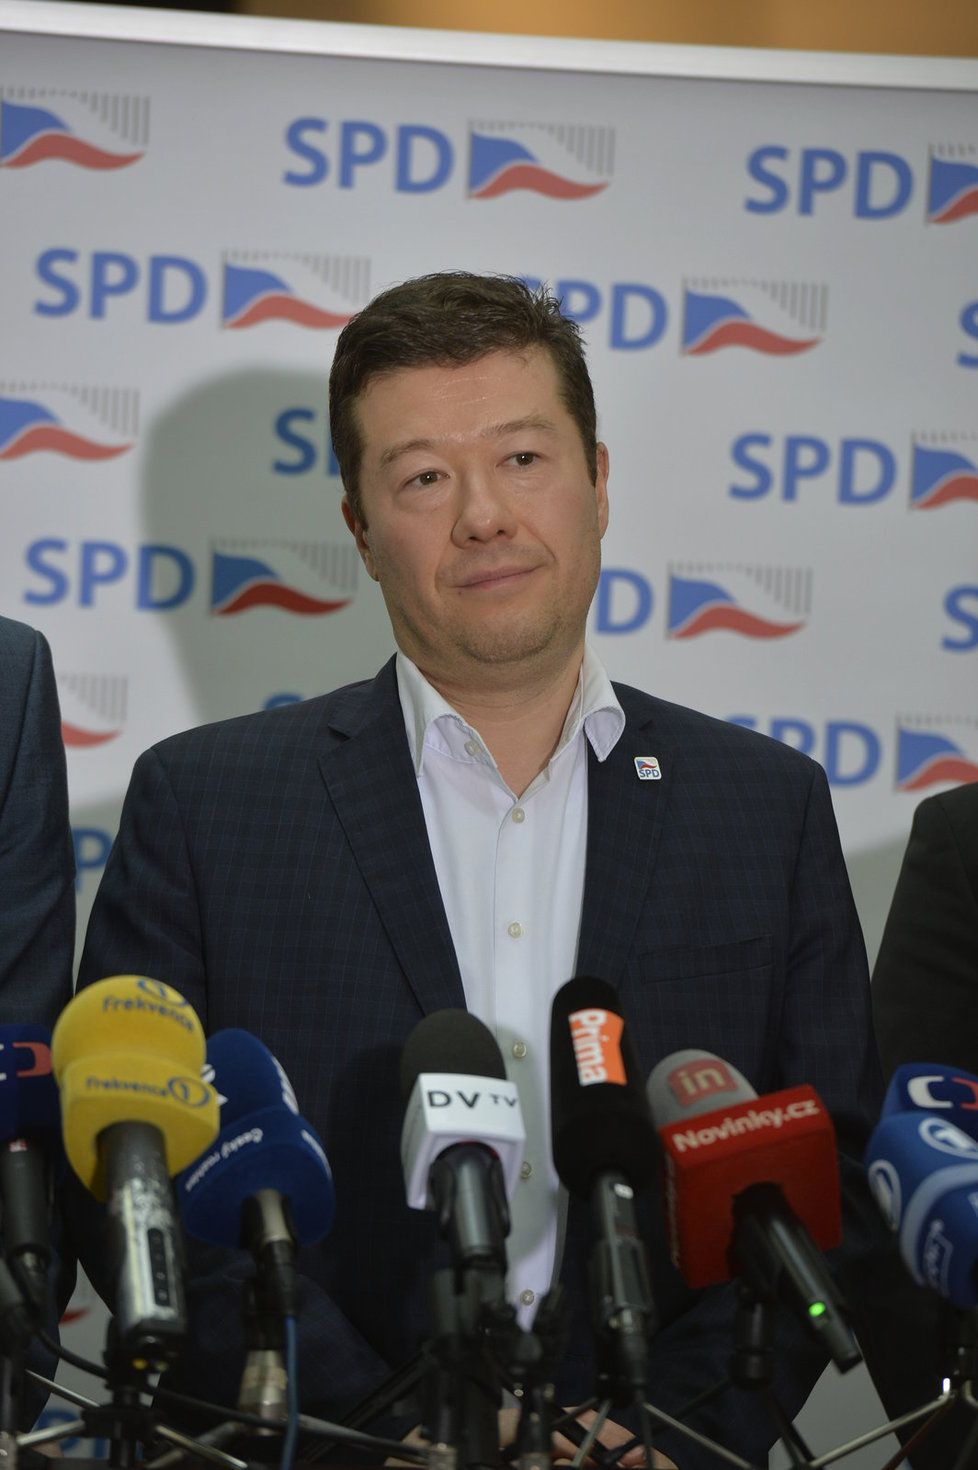 Policie obvinila tajemníka hnutí Svoboda a přímá demokracie (SPD) Jaroslava Staníka kvůli nenávistným výrokům ve Sněmovně